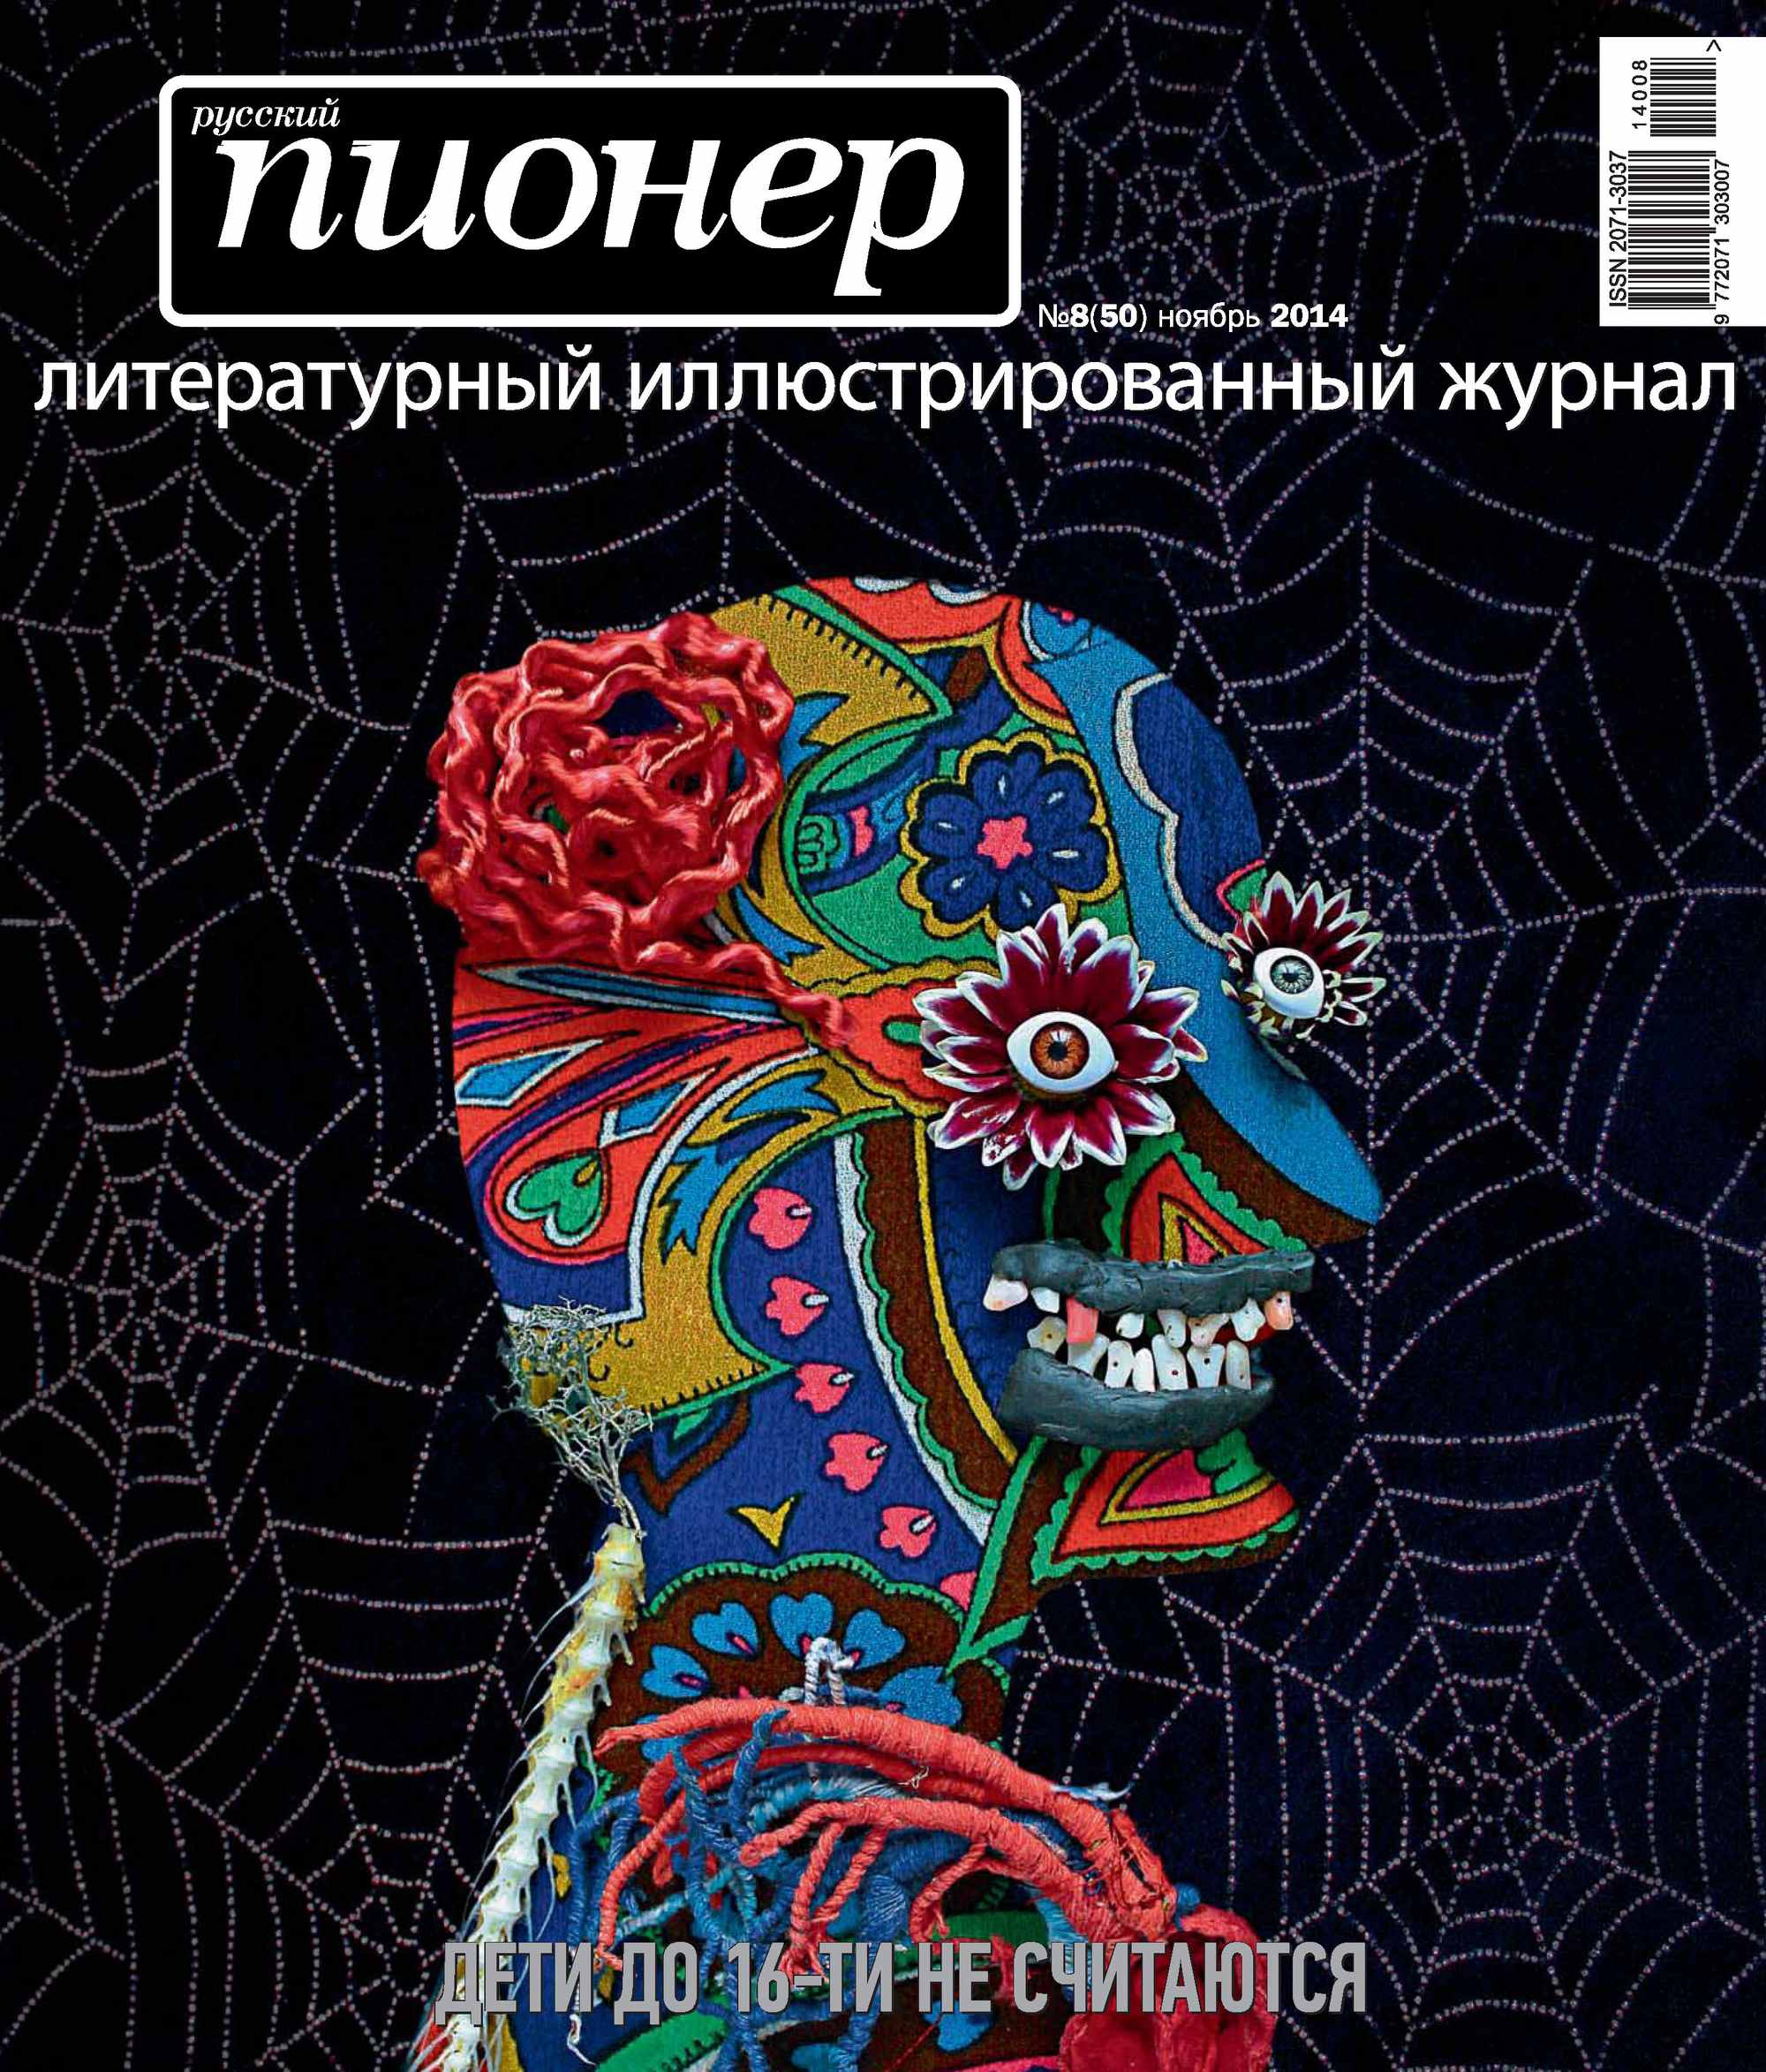 Русский пионер №8 (50), ноябрь 2014